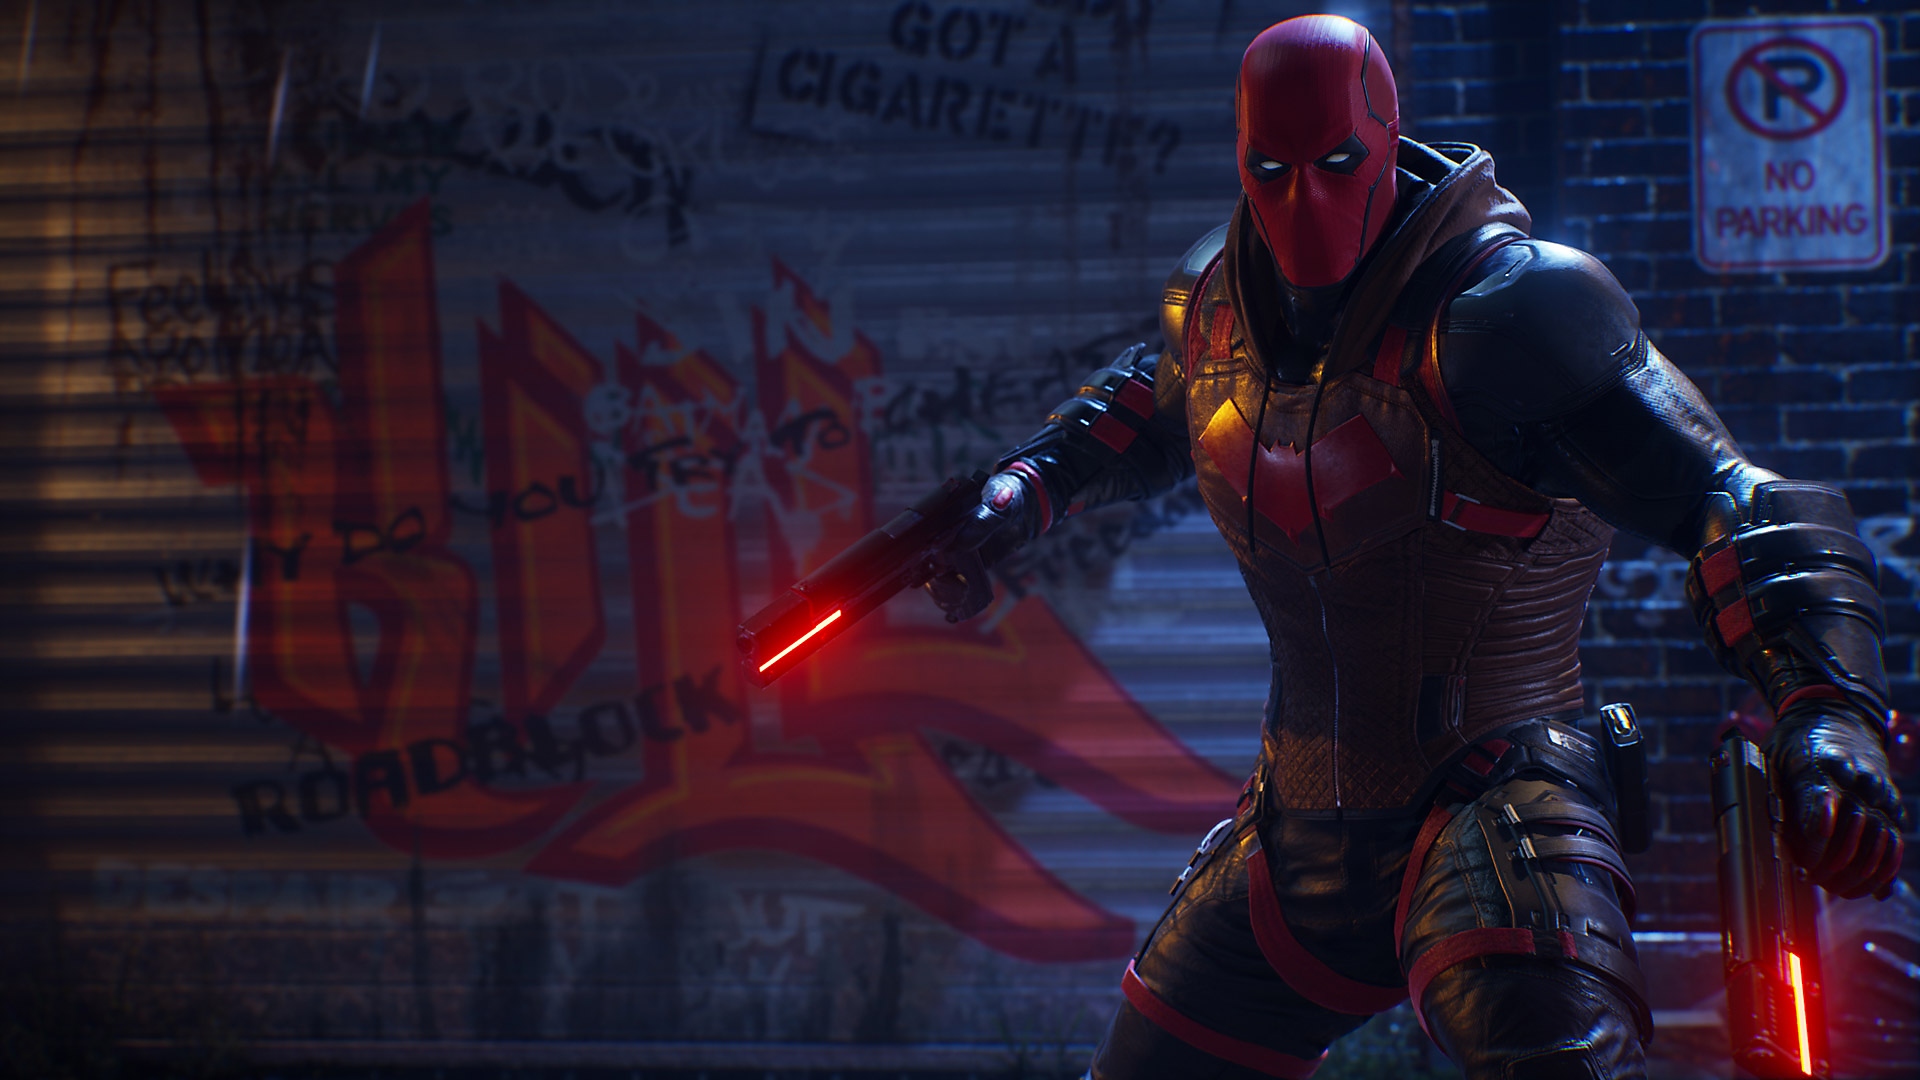 Captura de pantalla de Gotham Knights - Capucha Roja empuñando sus armas